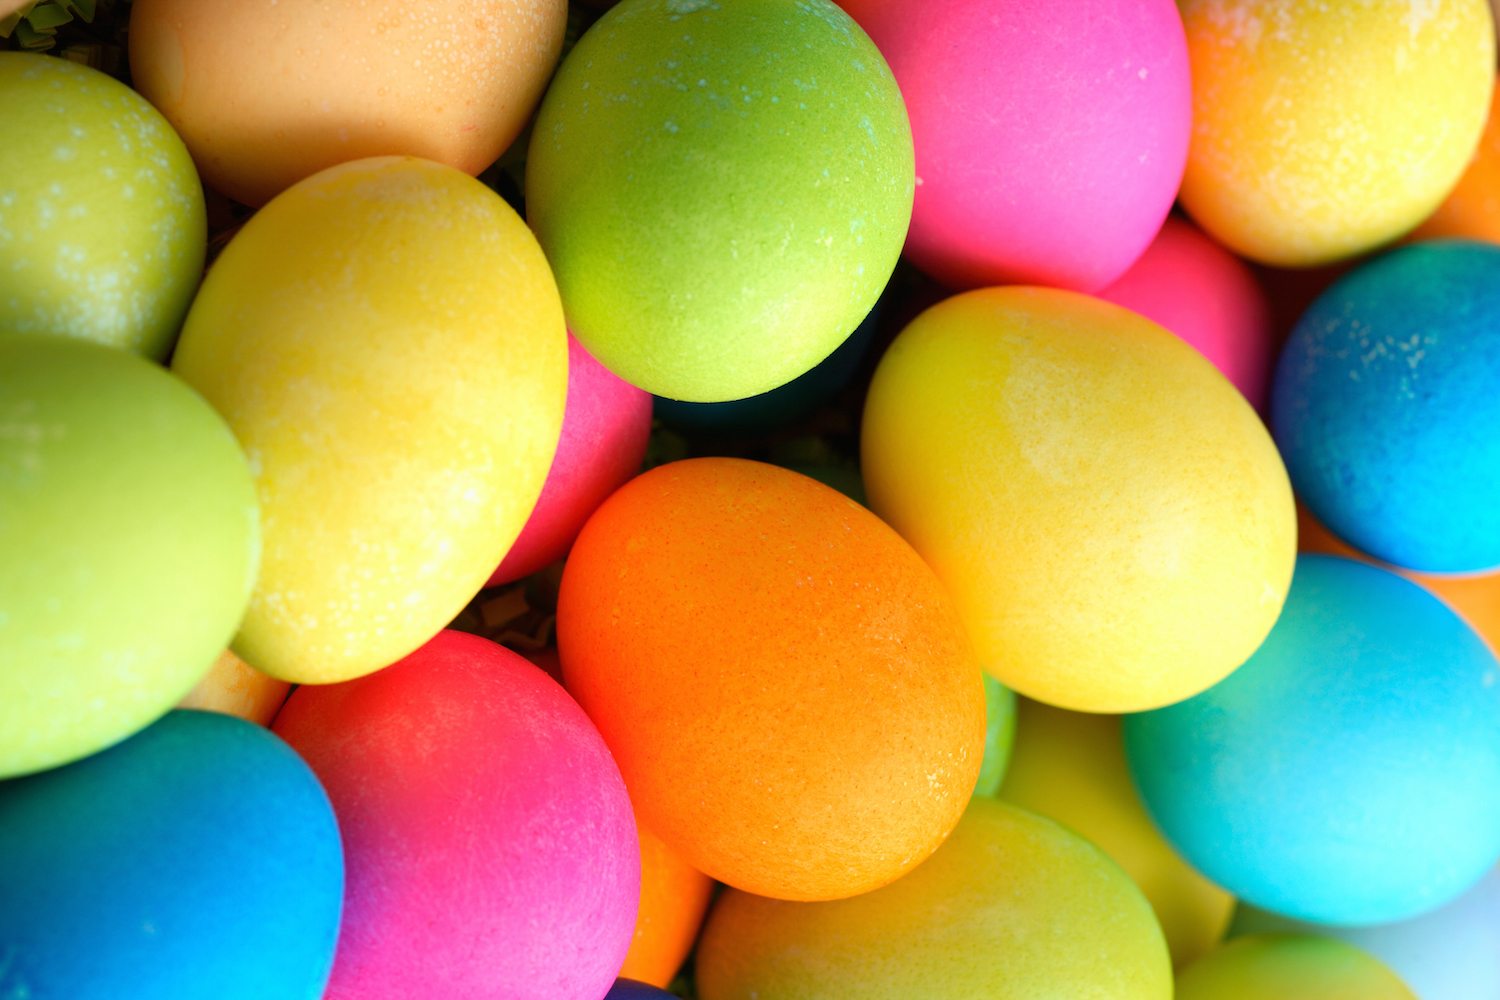 20 Egg-cellent Easter Foods